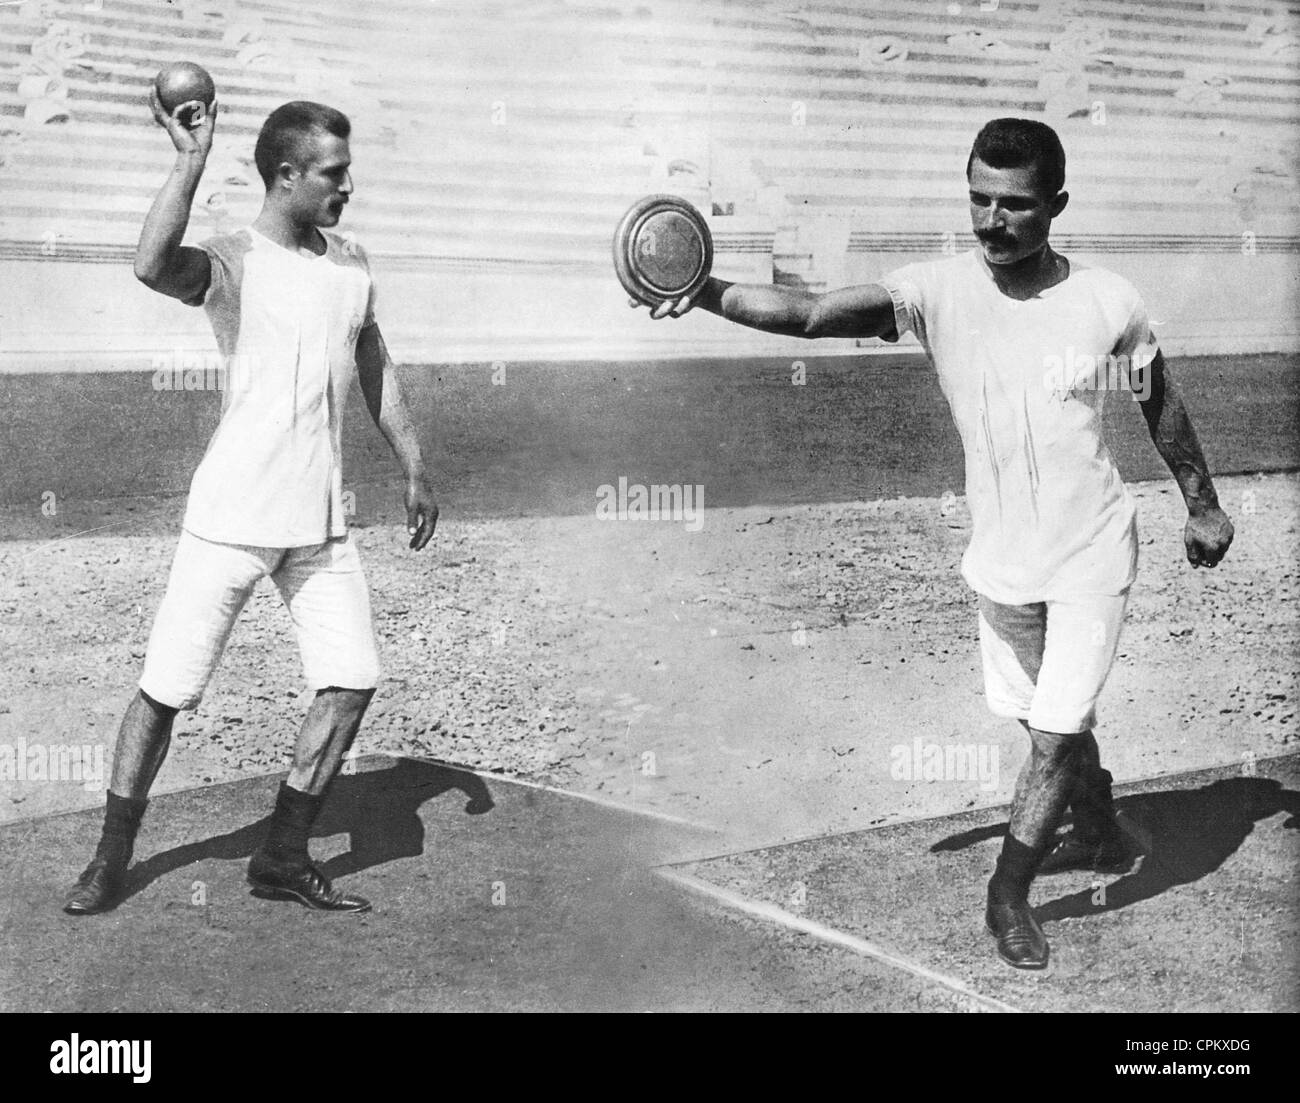 La Shot putter e discus thrower ai Giochi Olimpici di Atene, 1896 Foto Stock